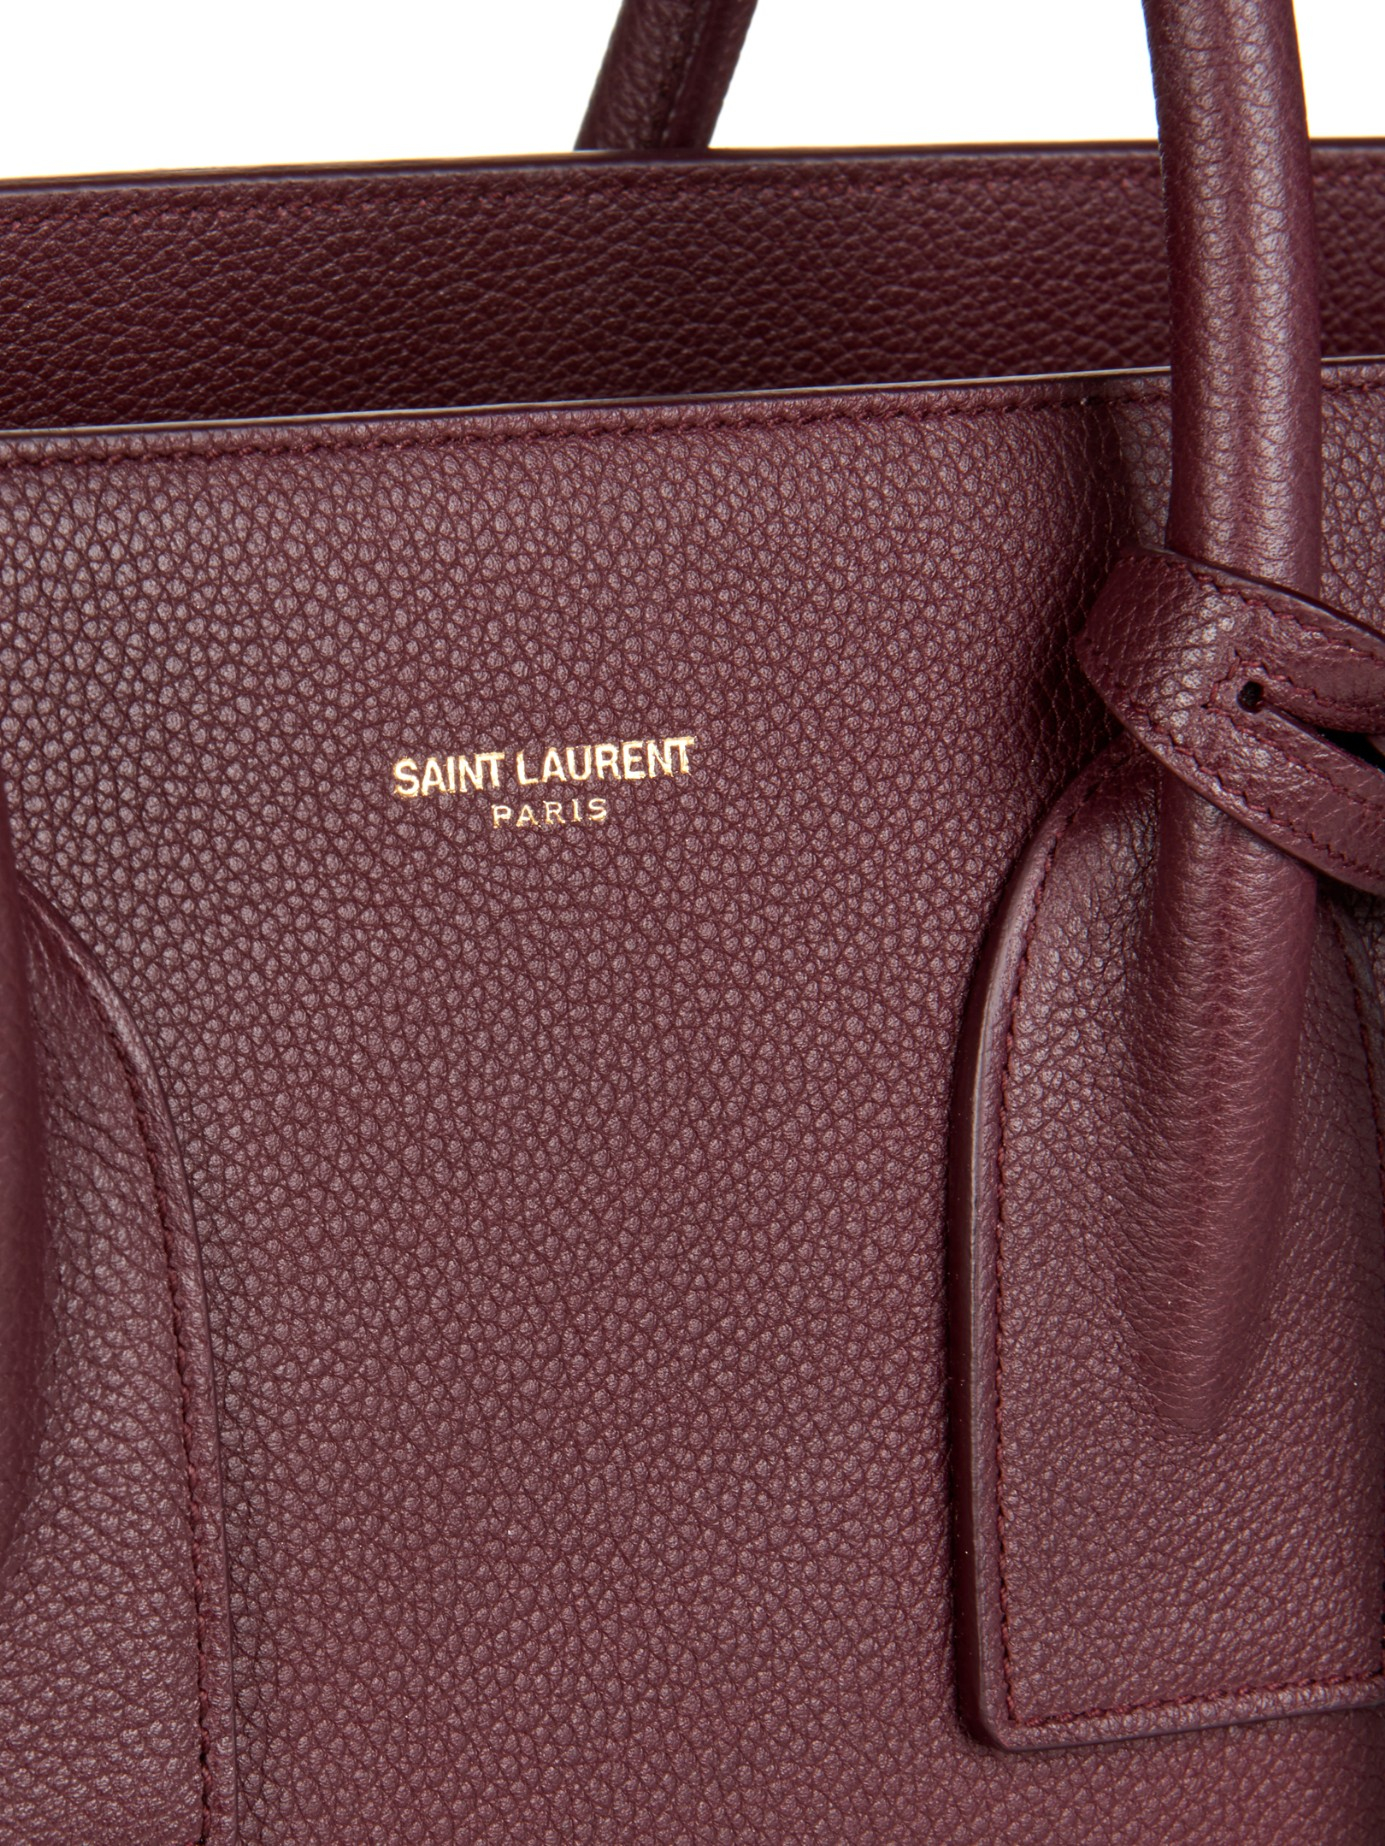 SAINT LAURENT PARIS YSL Sac De Jour Small Black Patent Leather Bag